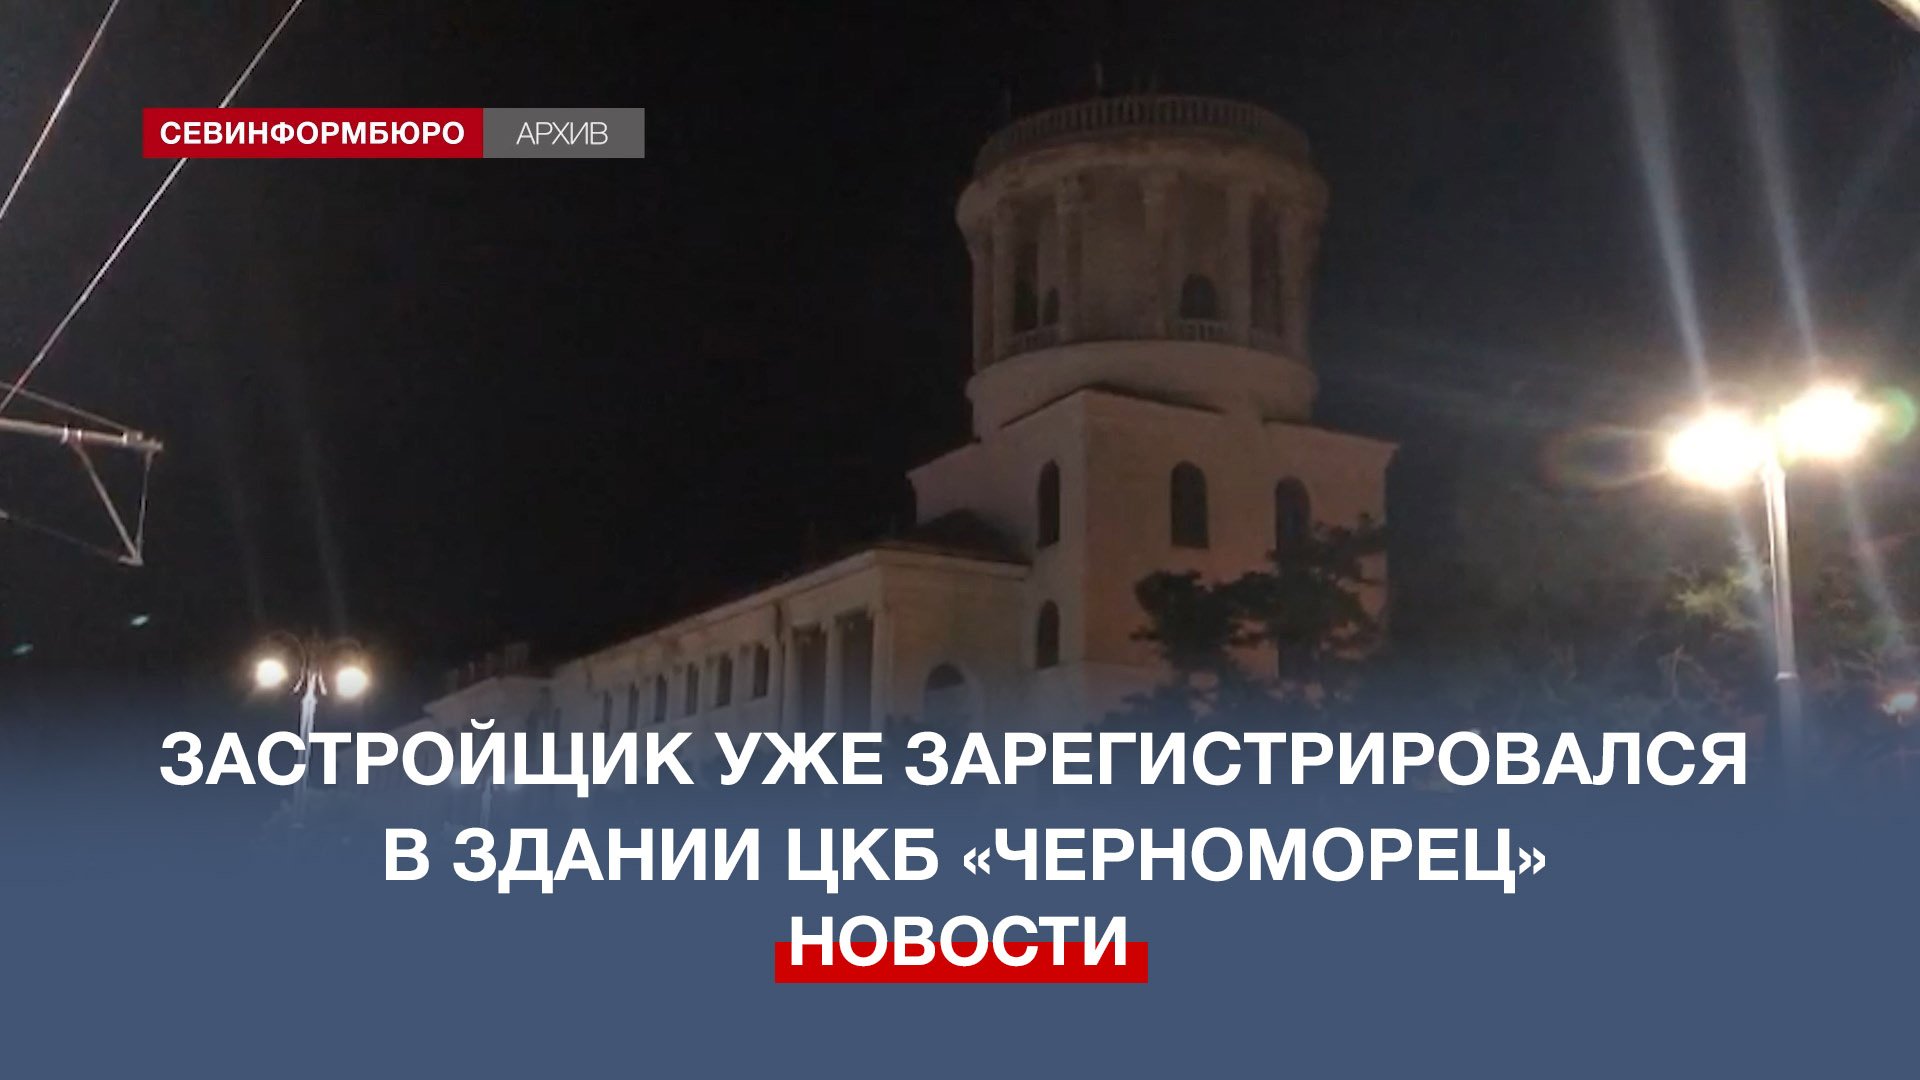 Застройщик уже зарегистрировался в здании ЦКБ «Черноморец»